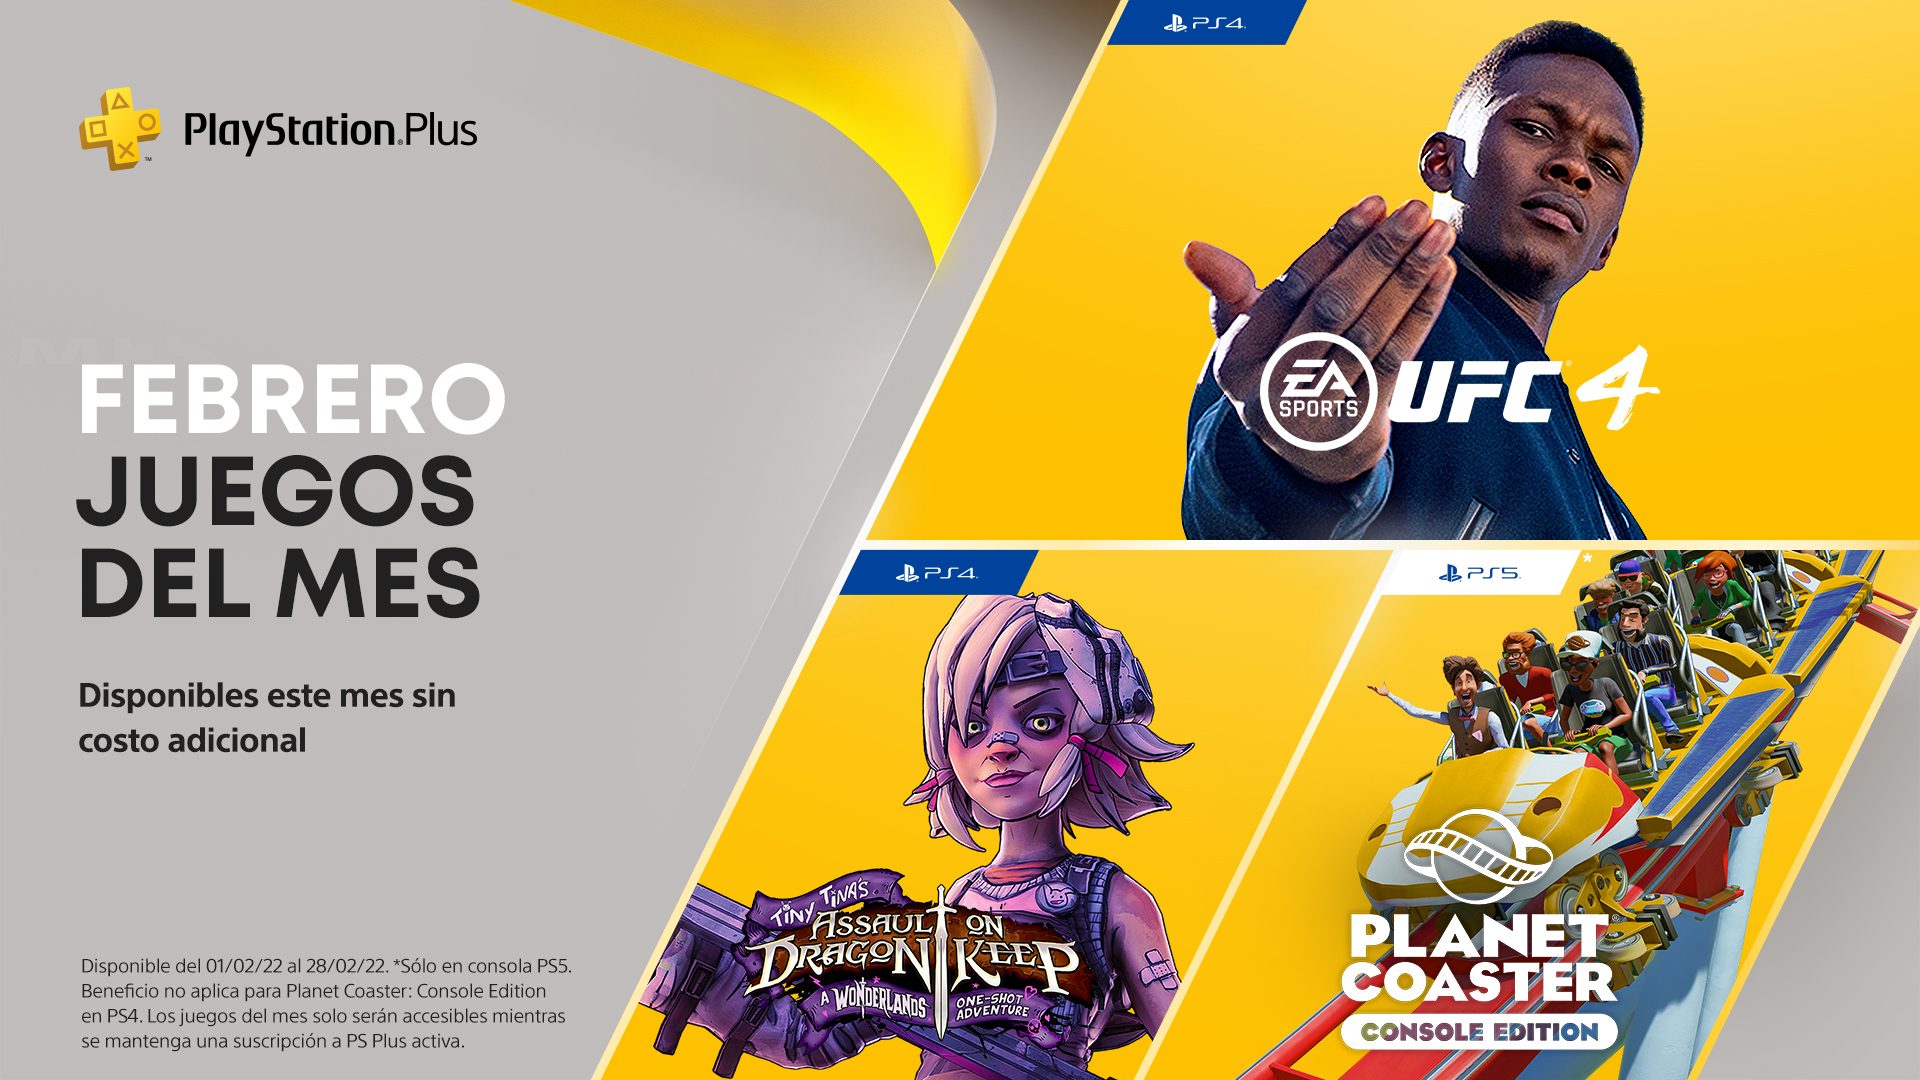 Juegos de PlayStation Plus para febrero de 2022 UFC 4, Coaster